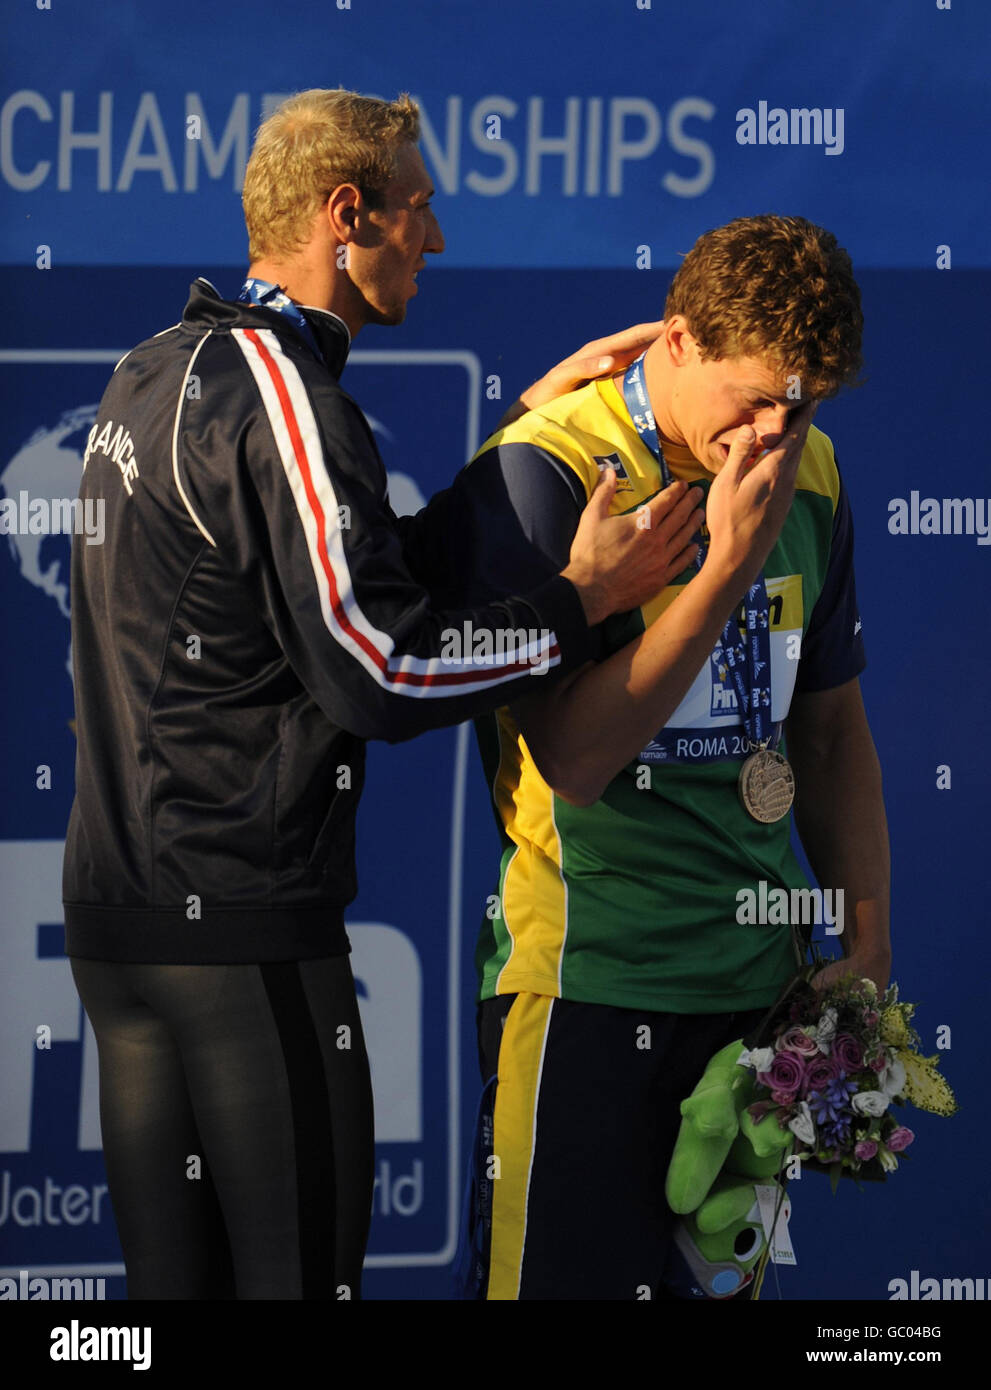 Le brésilien Cesar Cielo Filho pleure lors de la cérémonie de remise des médailles avec Alain Bernard, médaillé d'argent français (à gauche), après avoir remporté la finale Freestyle de 100 m masculin lors des Championnats du monde de natation de la FINA à Rome, en Italie. Banque D'Images